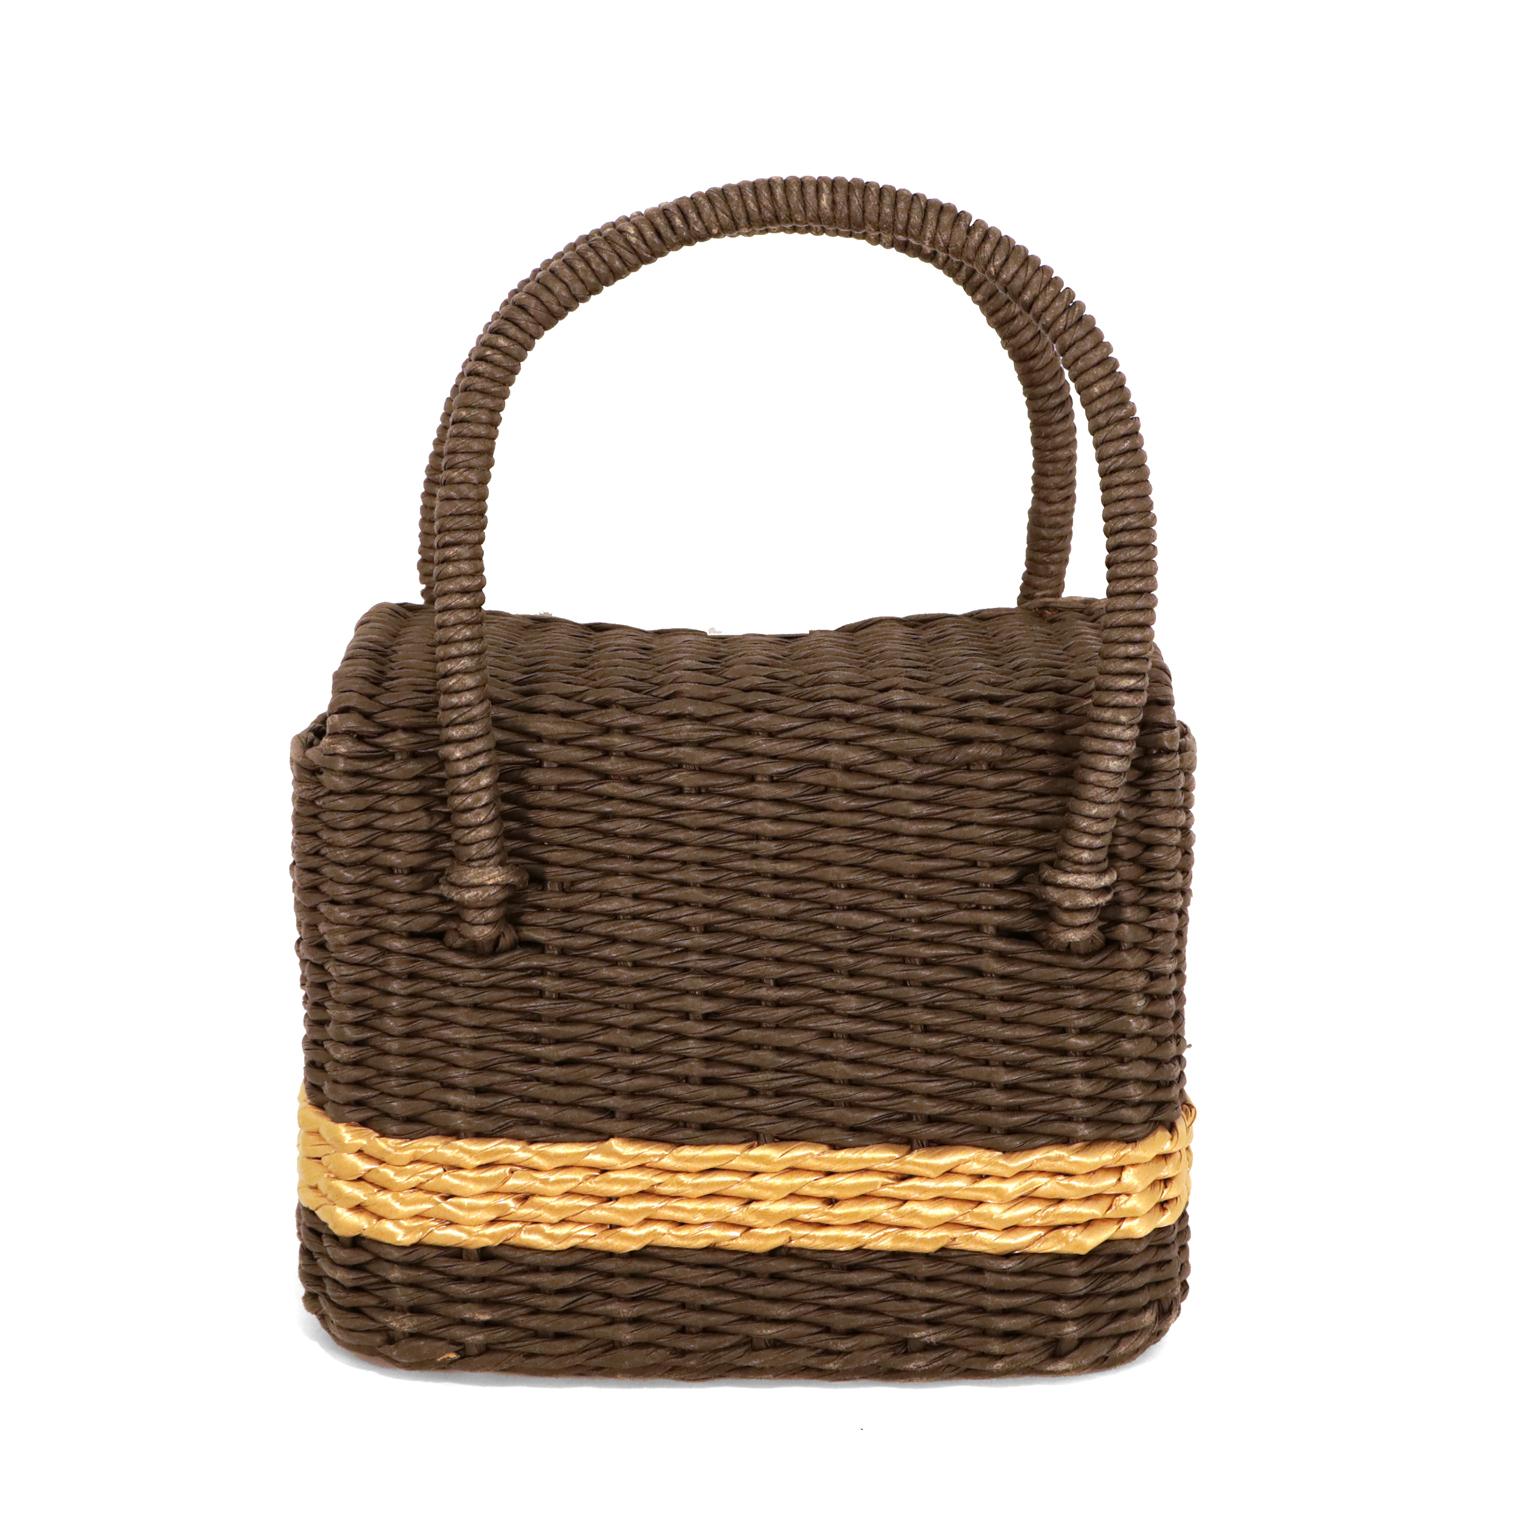 Diese authentische Chanel Schwarz und Gold Wicker Basket Bag ist in sehr gutem Zustand.  Dieses sehr begehrte Sammlerstück ist eine Rarität für jede Sammlung.  
Schwarze Tasche aus robustem Weidengeflecht mit goldenem Streifen.  Verschluss mit matt